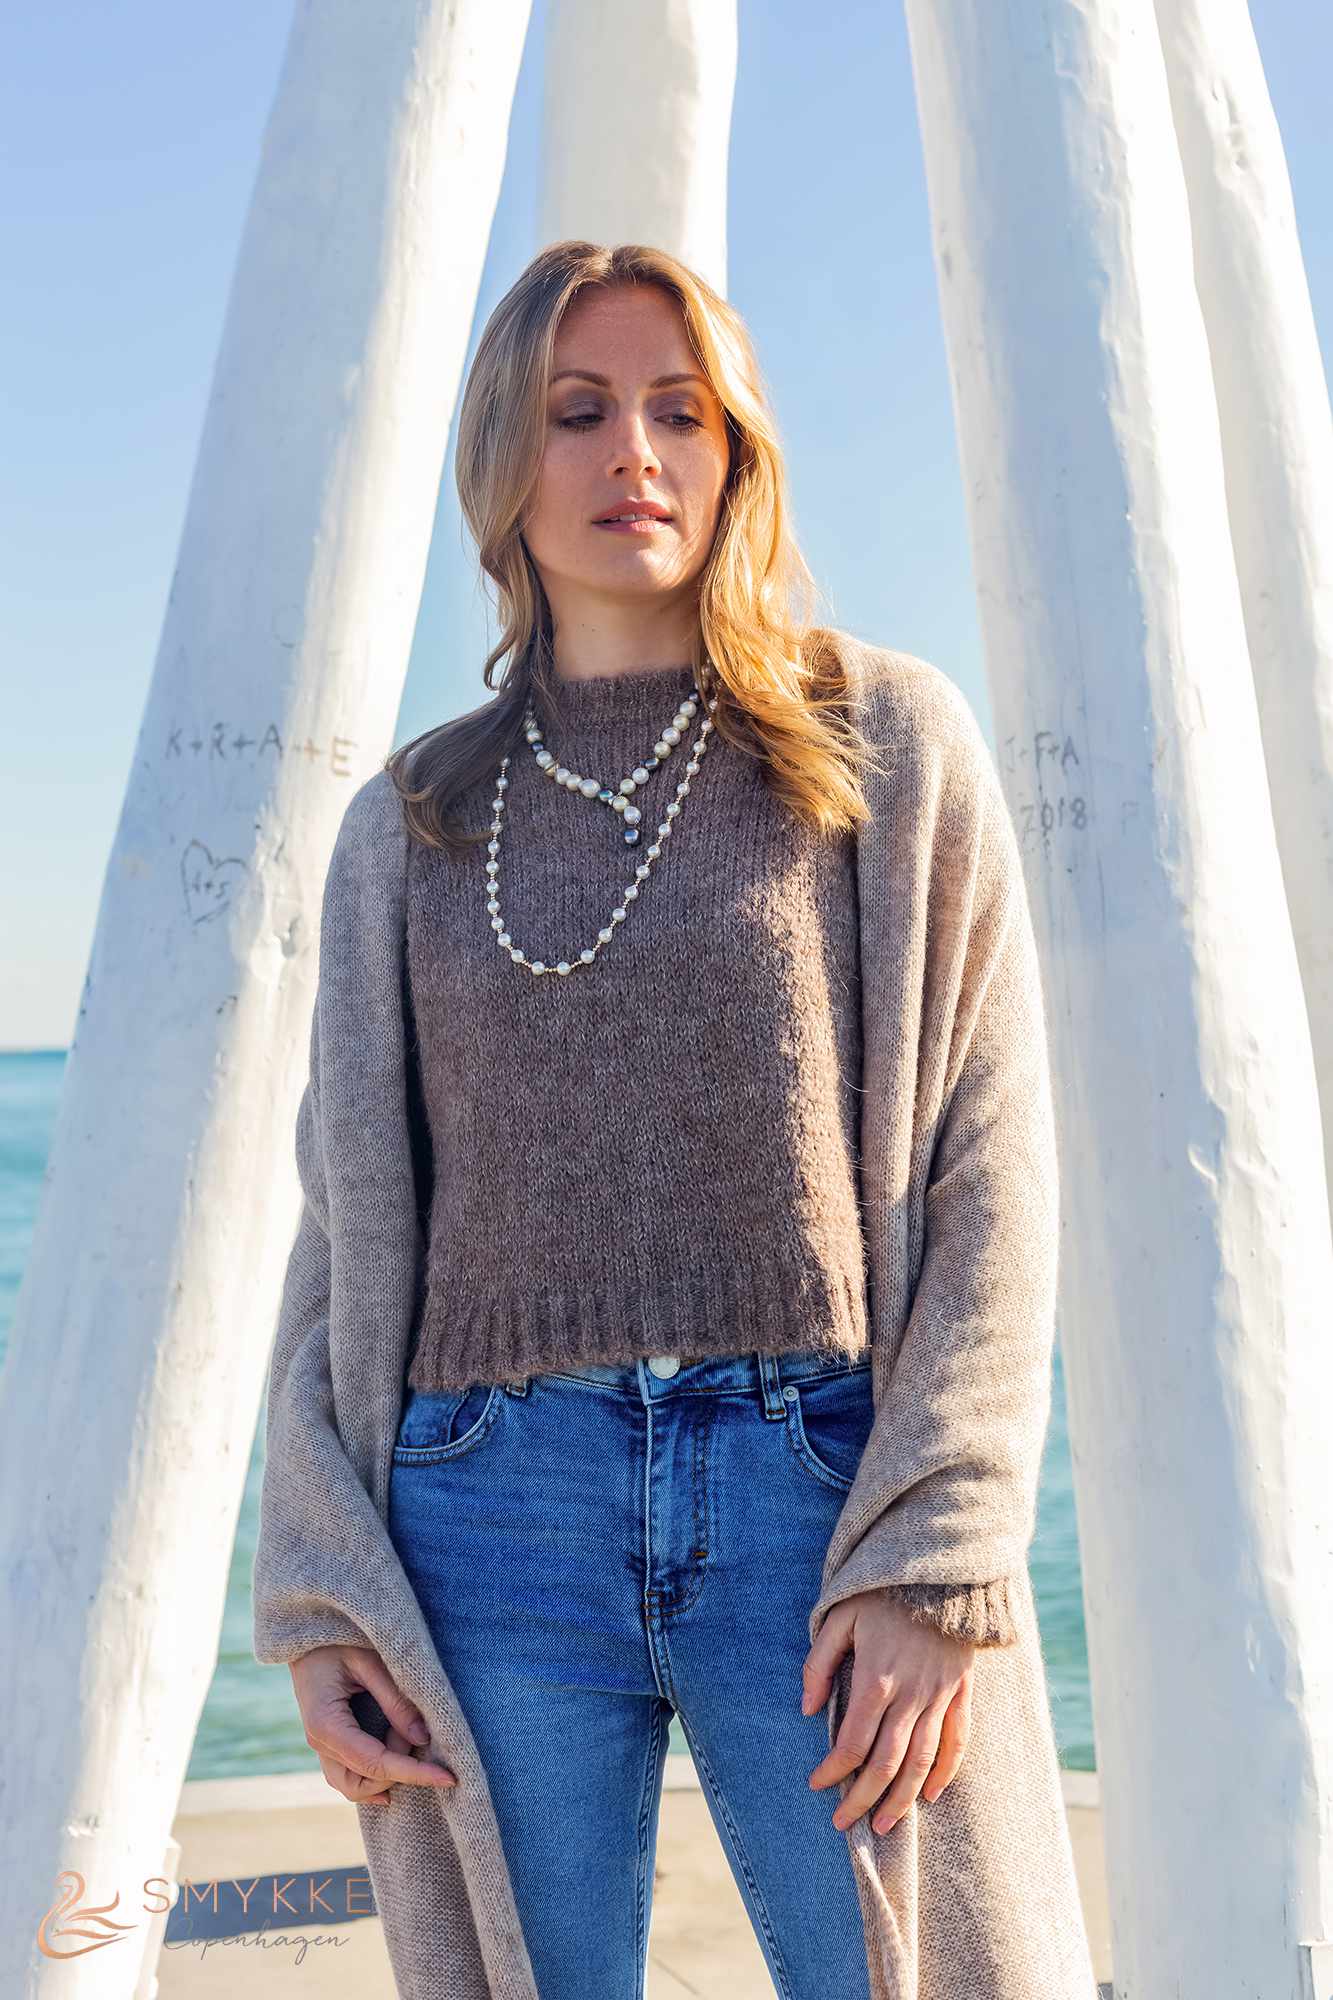 Smykke Copenhagen - Marta Dolska - Bellevue Strand - South Pacific Pearl necklace 2